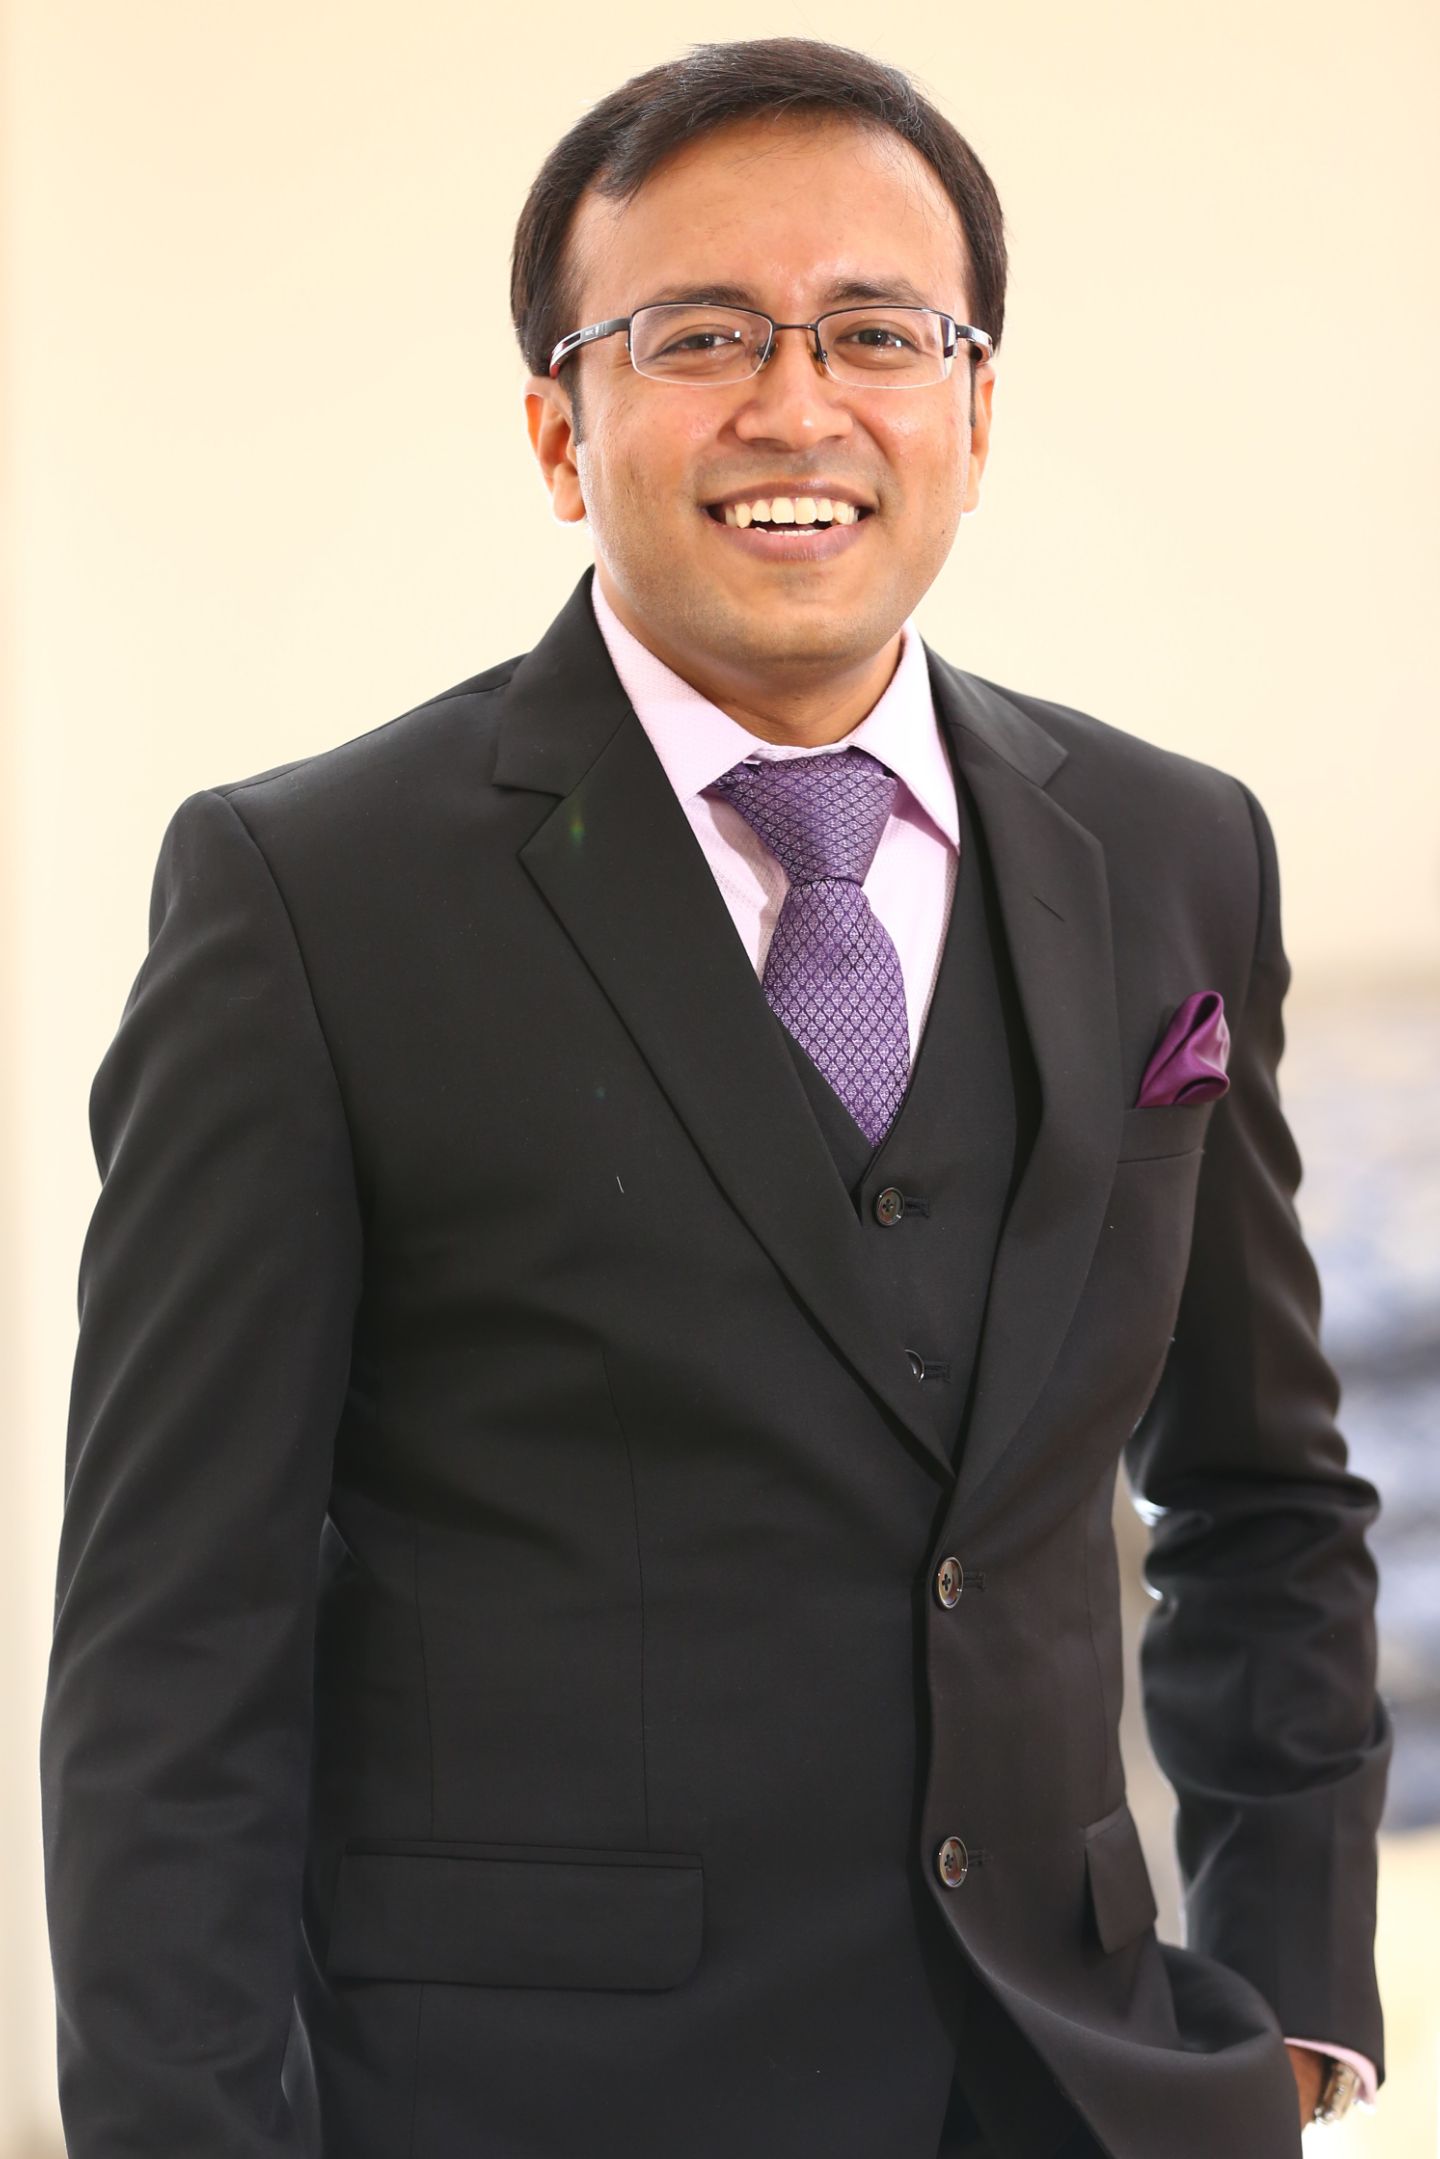 Jeenam Shah